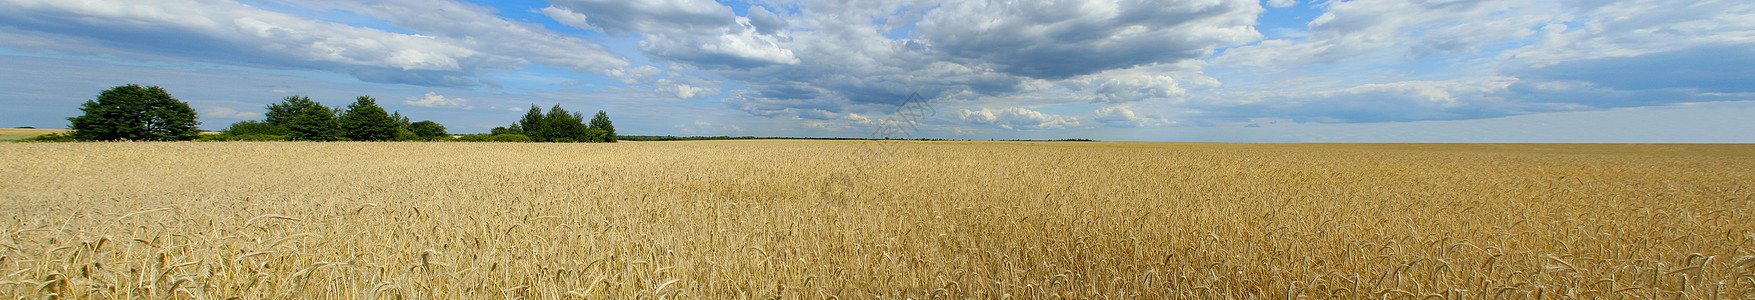 小麦田全市图片